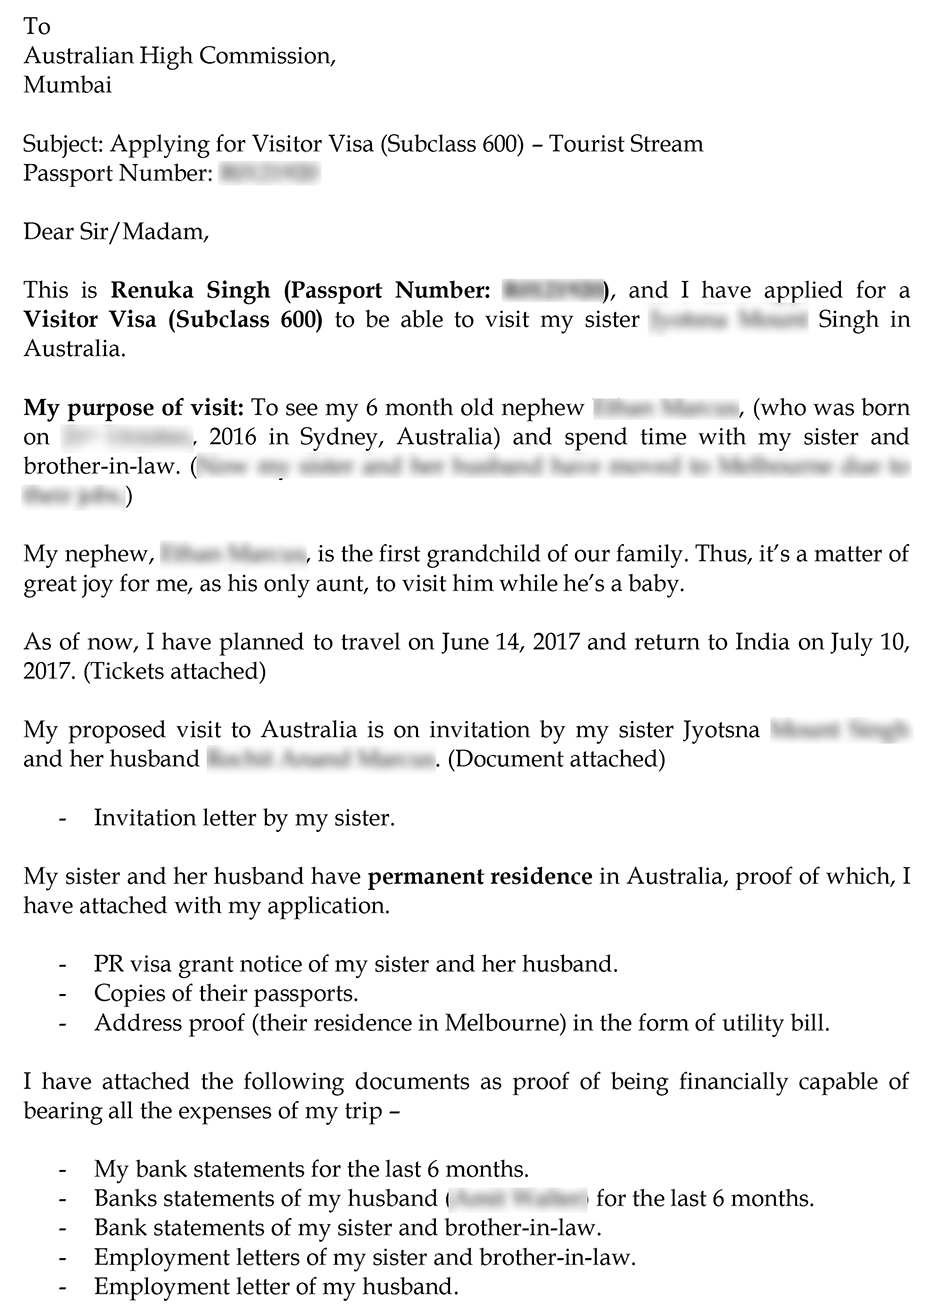 sample cover letter for partner visa australia